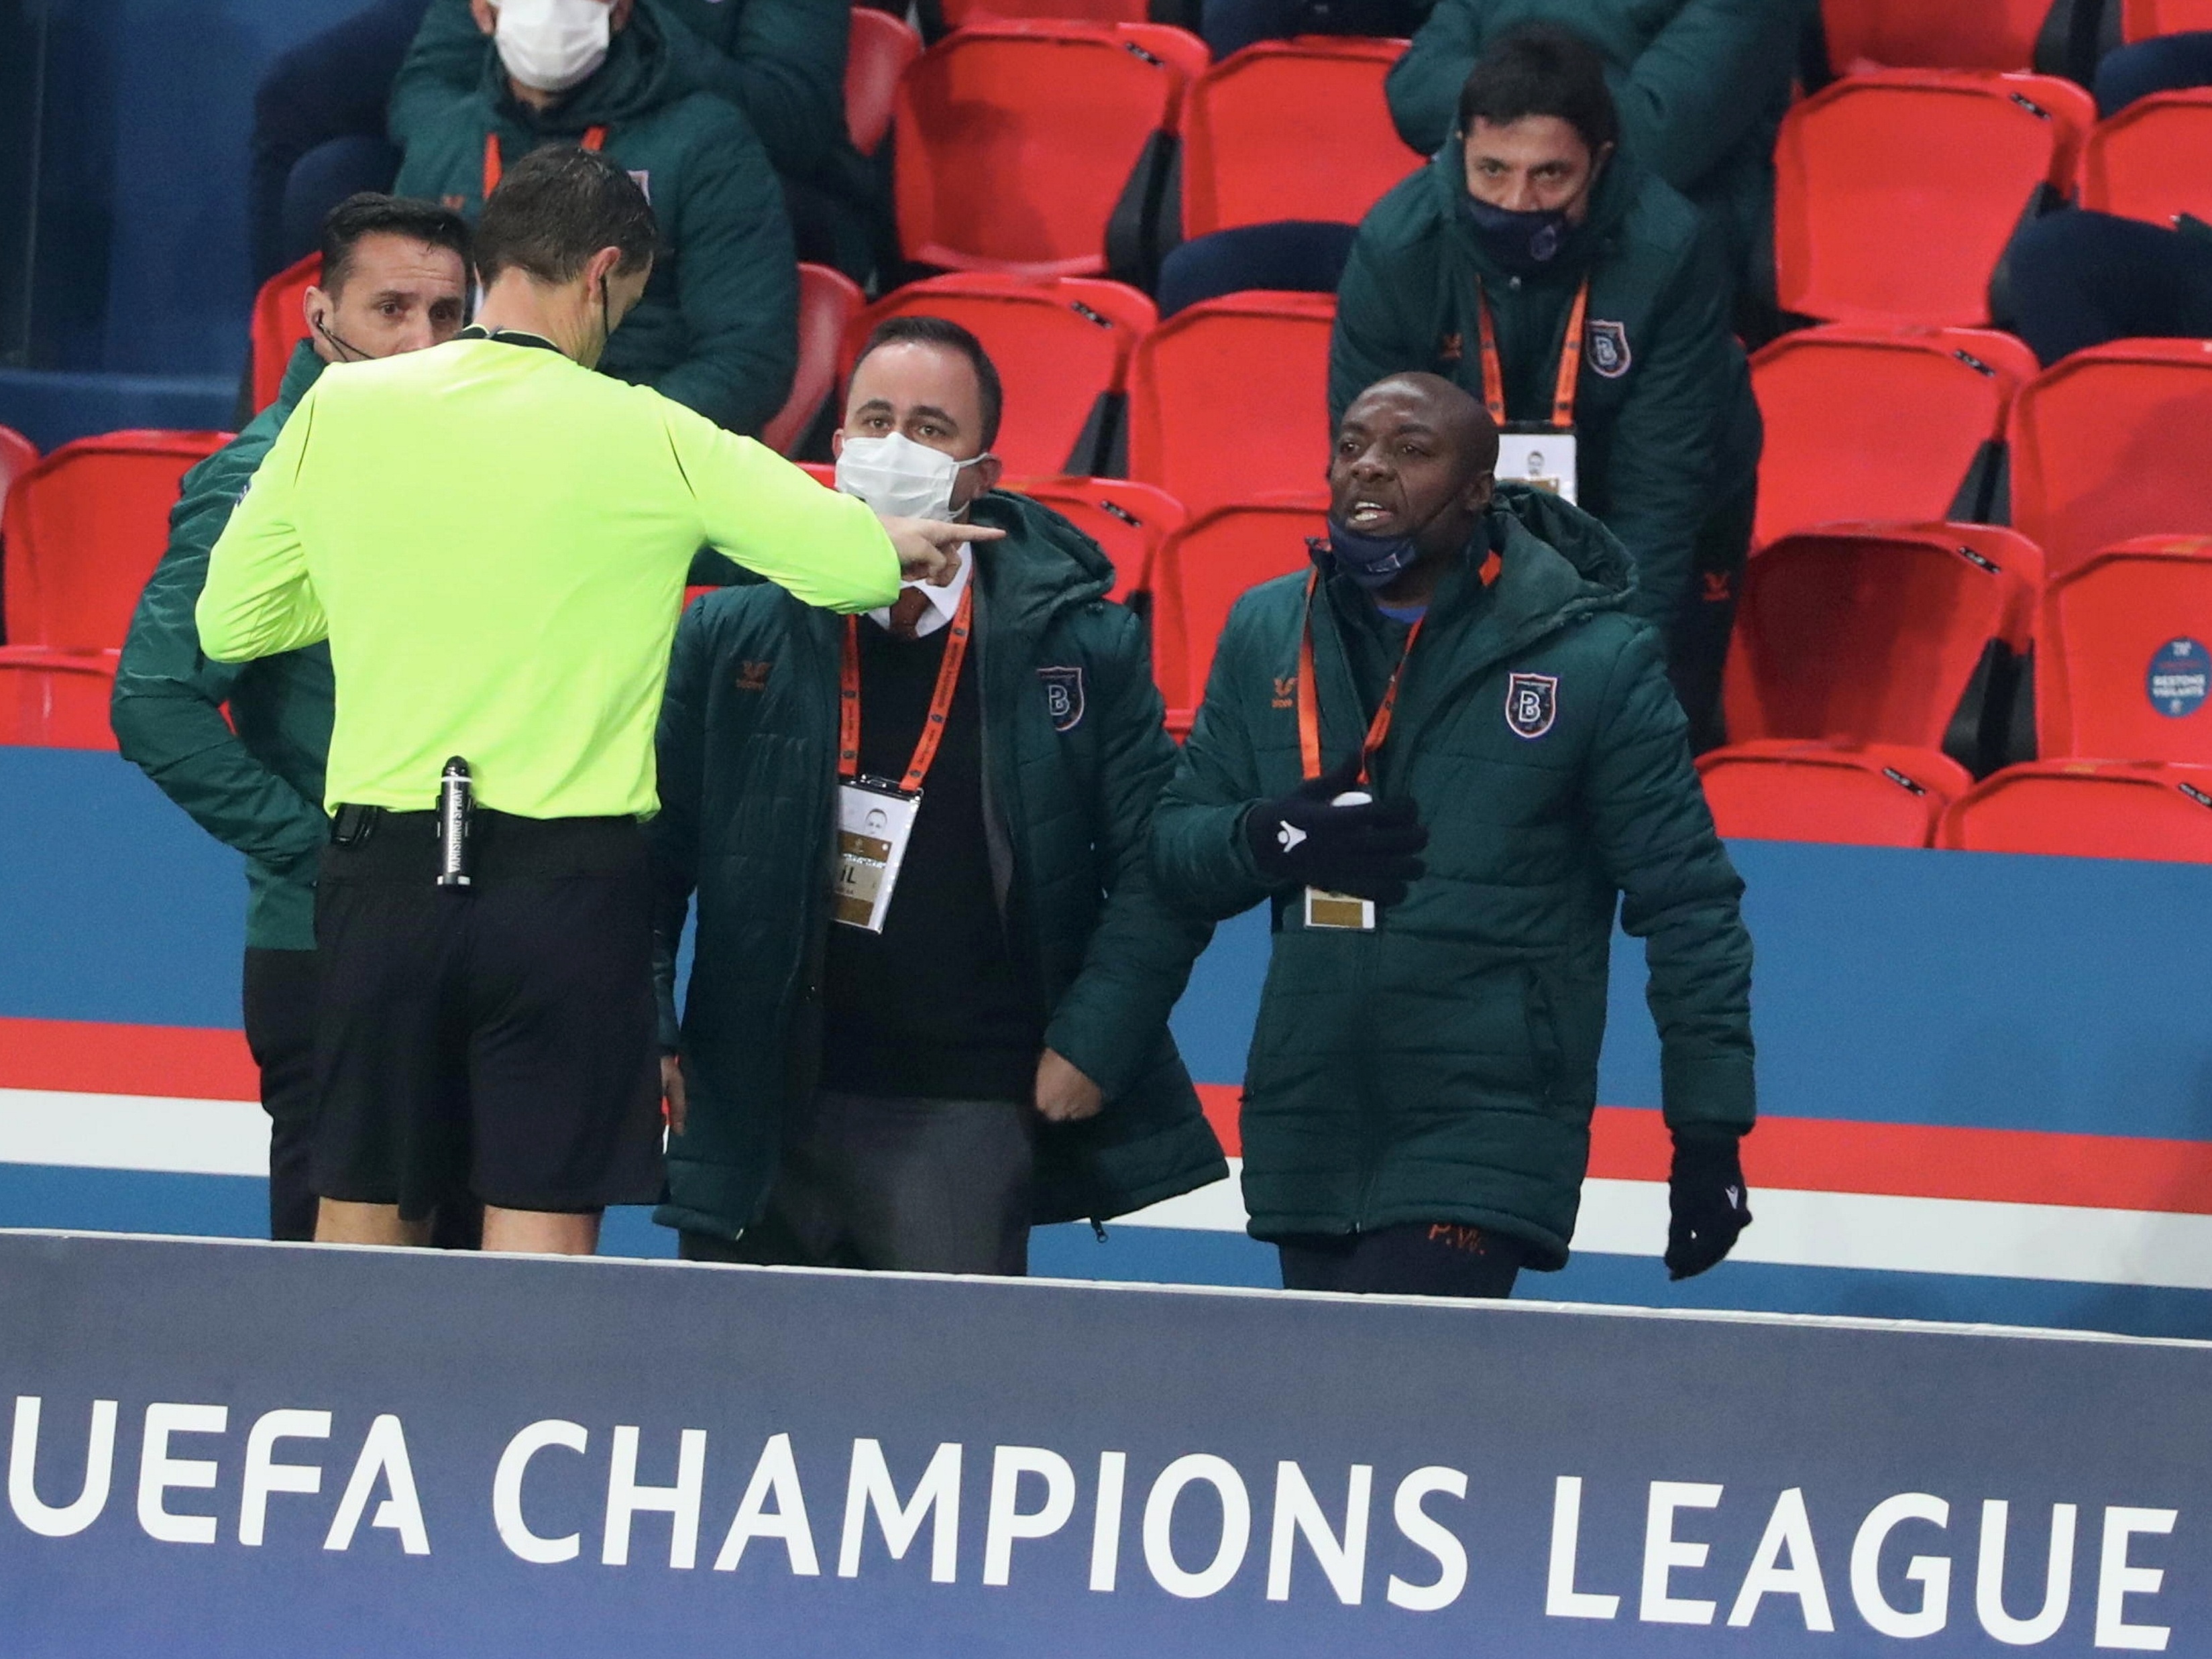 Champions League: Uefa muda escala de árbitros após erro em jogo do PSG